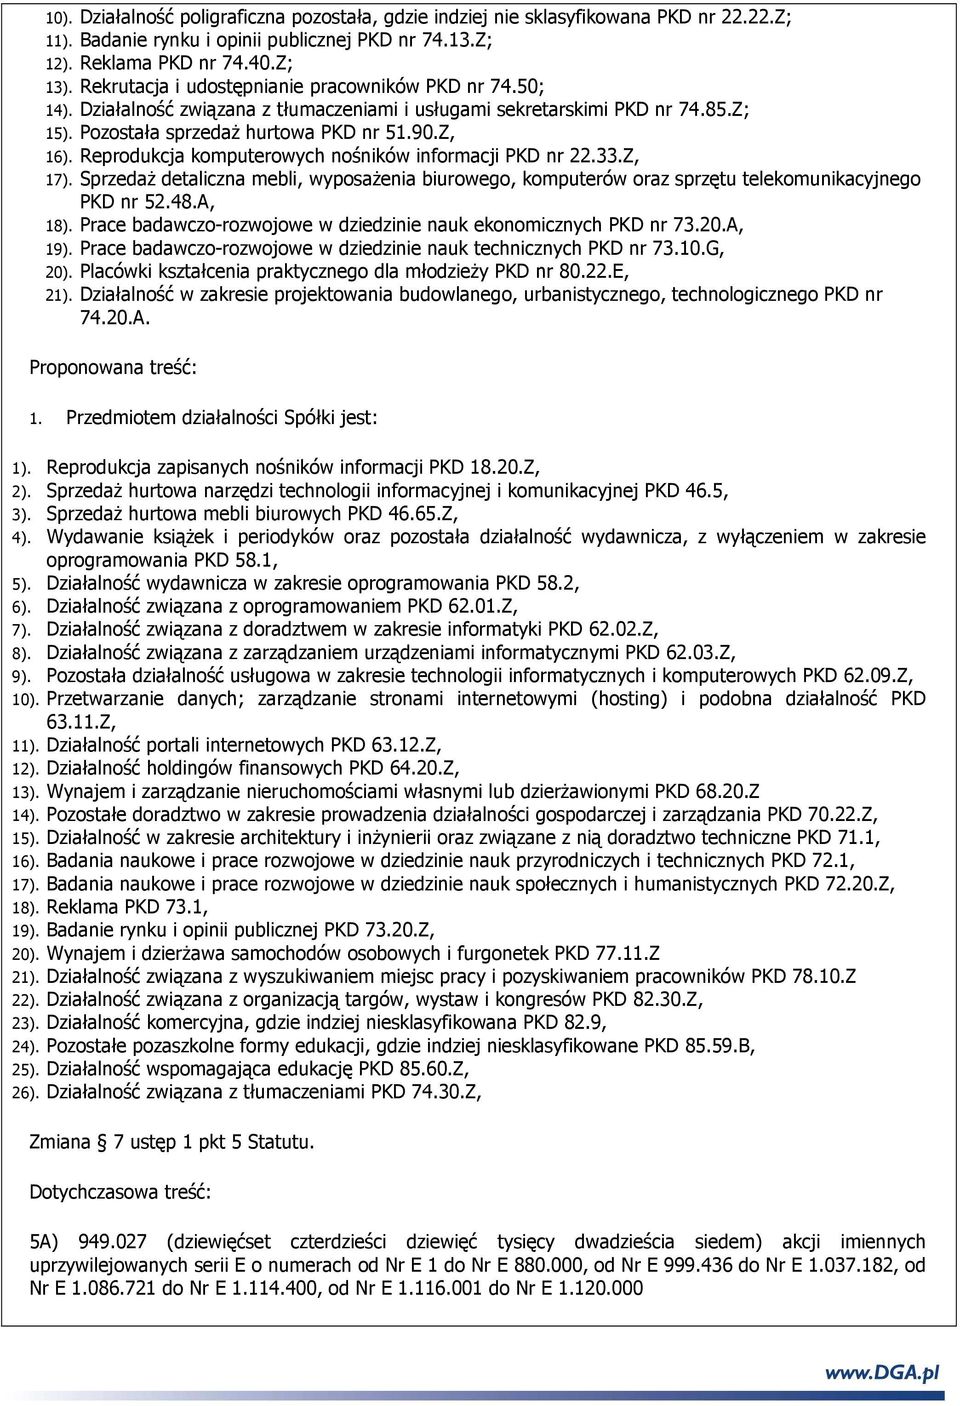 Reprodukcja komputerowych nośników informacji PKD nr 22.33.Z, 17). SprzedaŜ detaliczna mebli, wyposaŝenia biurowego, komputerów oraz sprzętu telekomunikacyjnego PKD nr 52.48.A, 18).